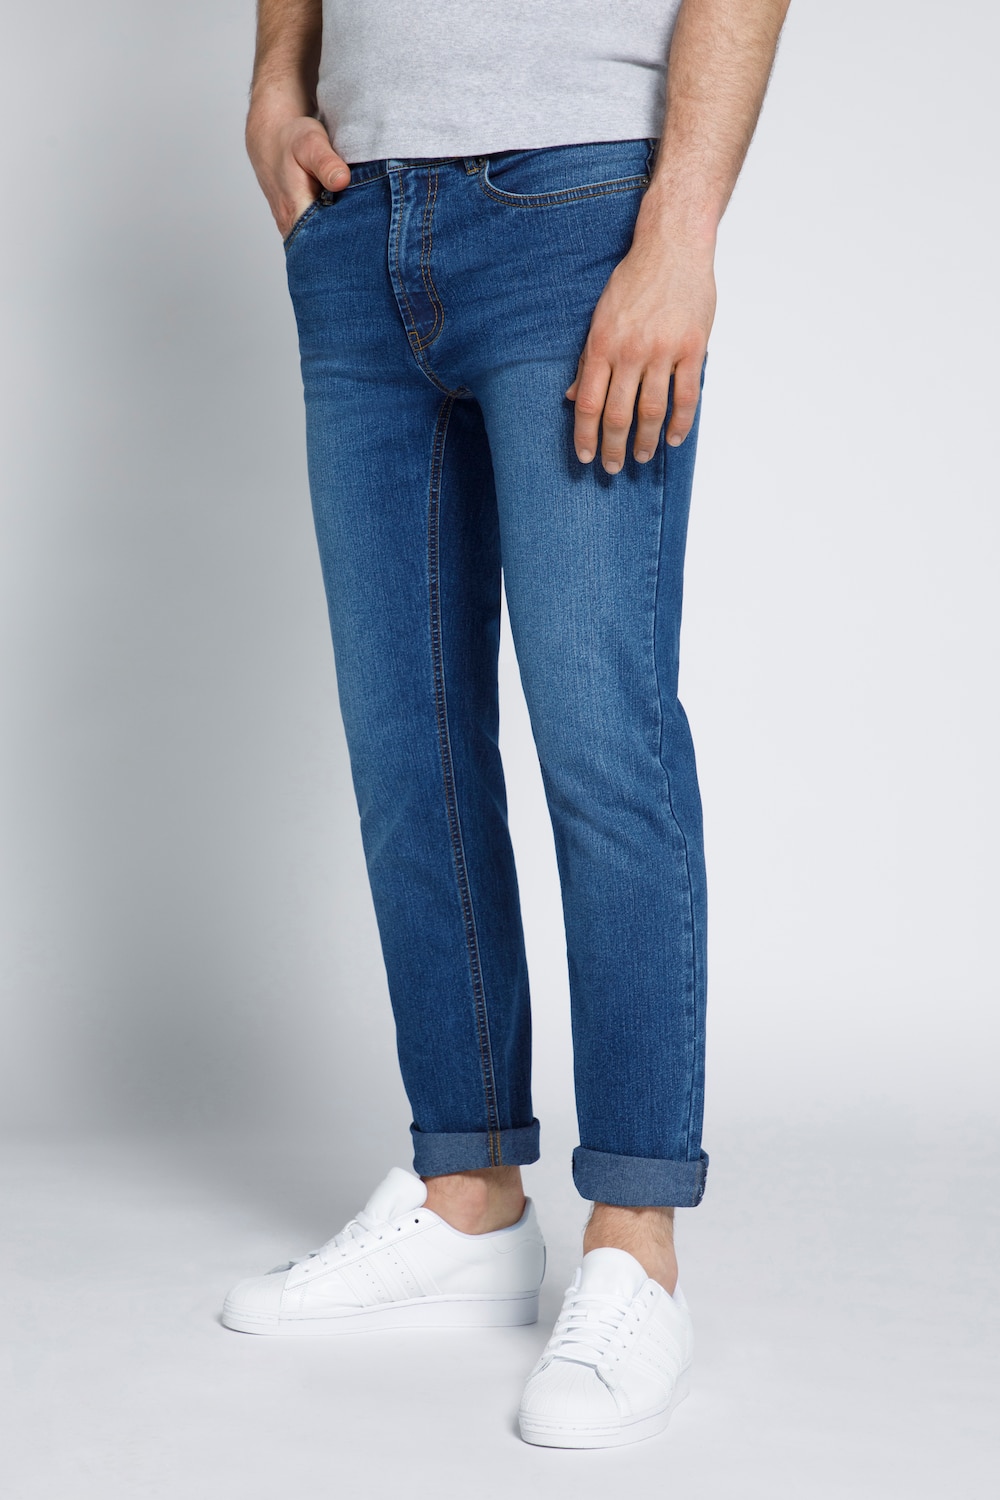 Große Größen STHUGE Herren Jeans Modern Fit, Herren, blau, Größe: 26, Baumwolle/Polyester, STHUGE von STHUGE